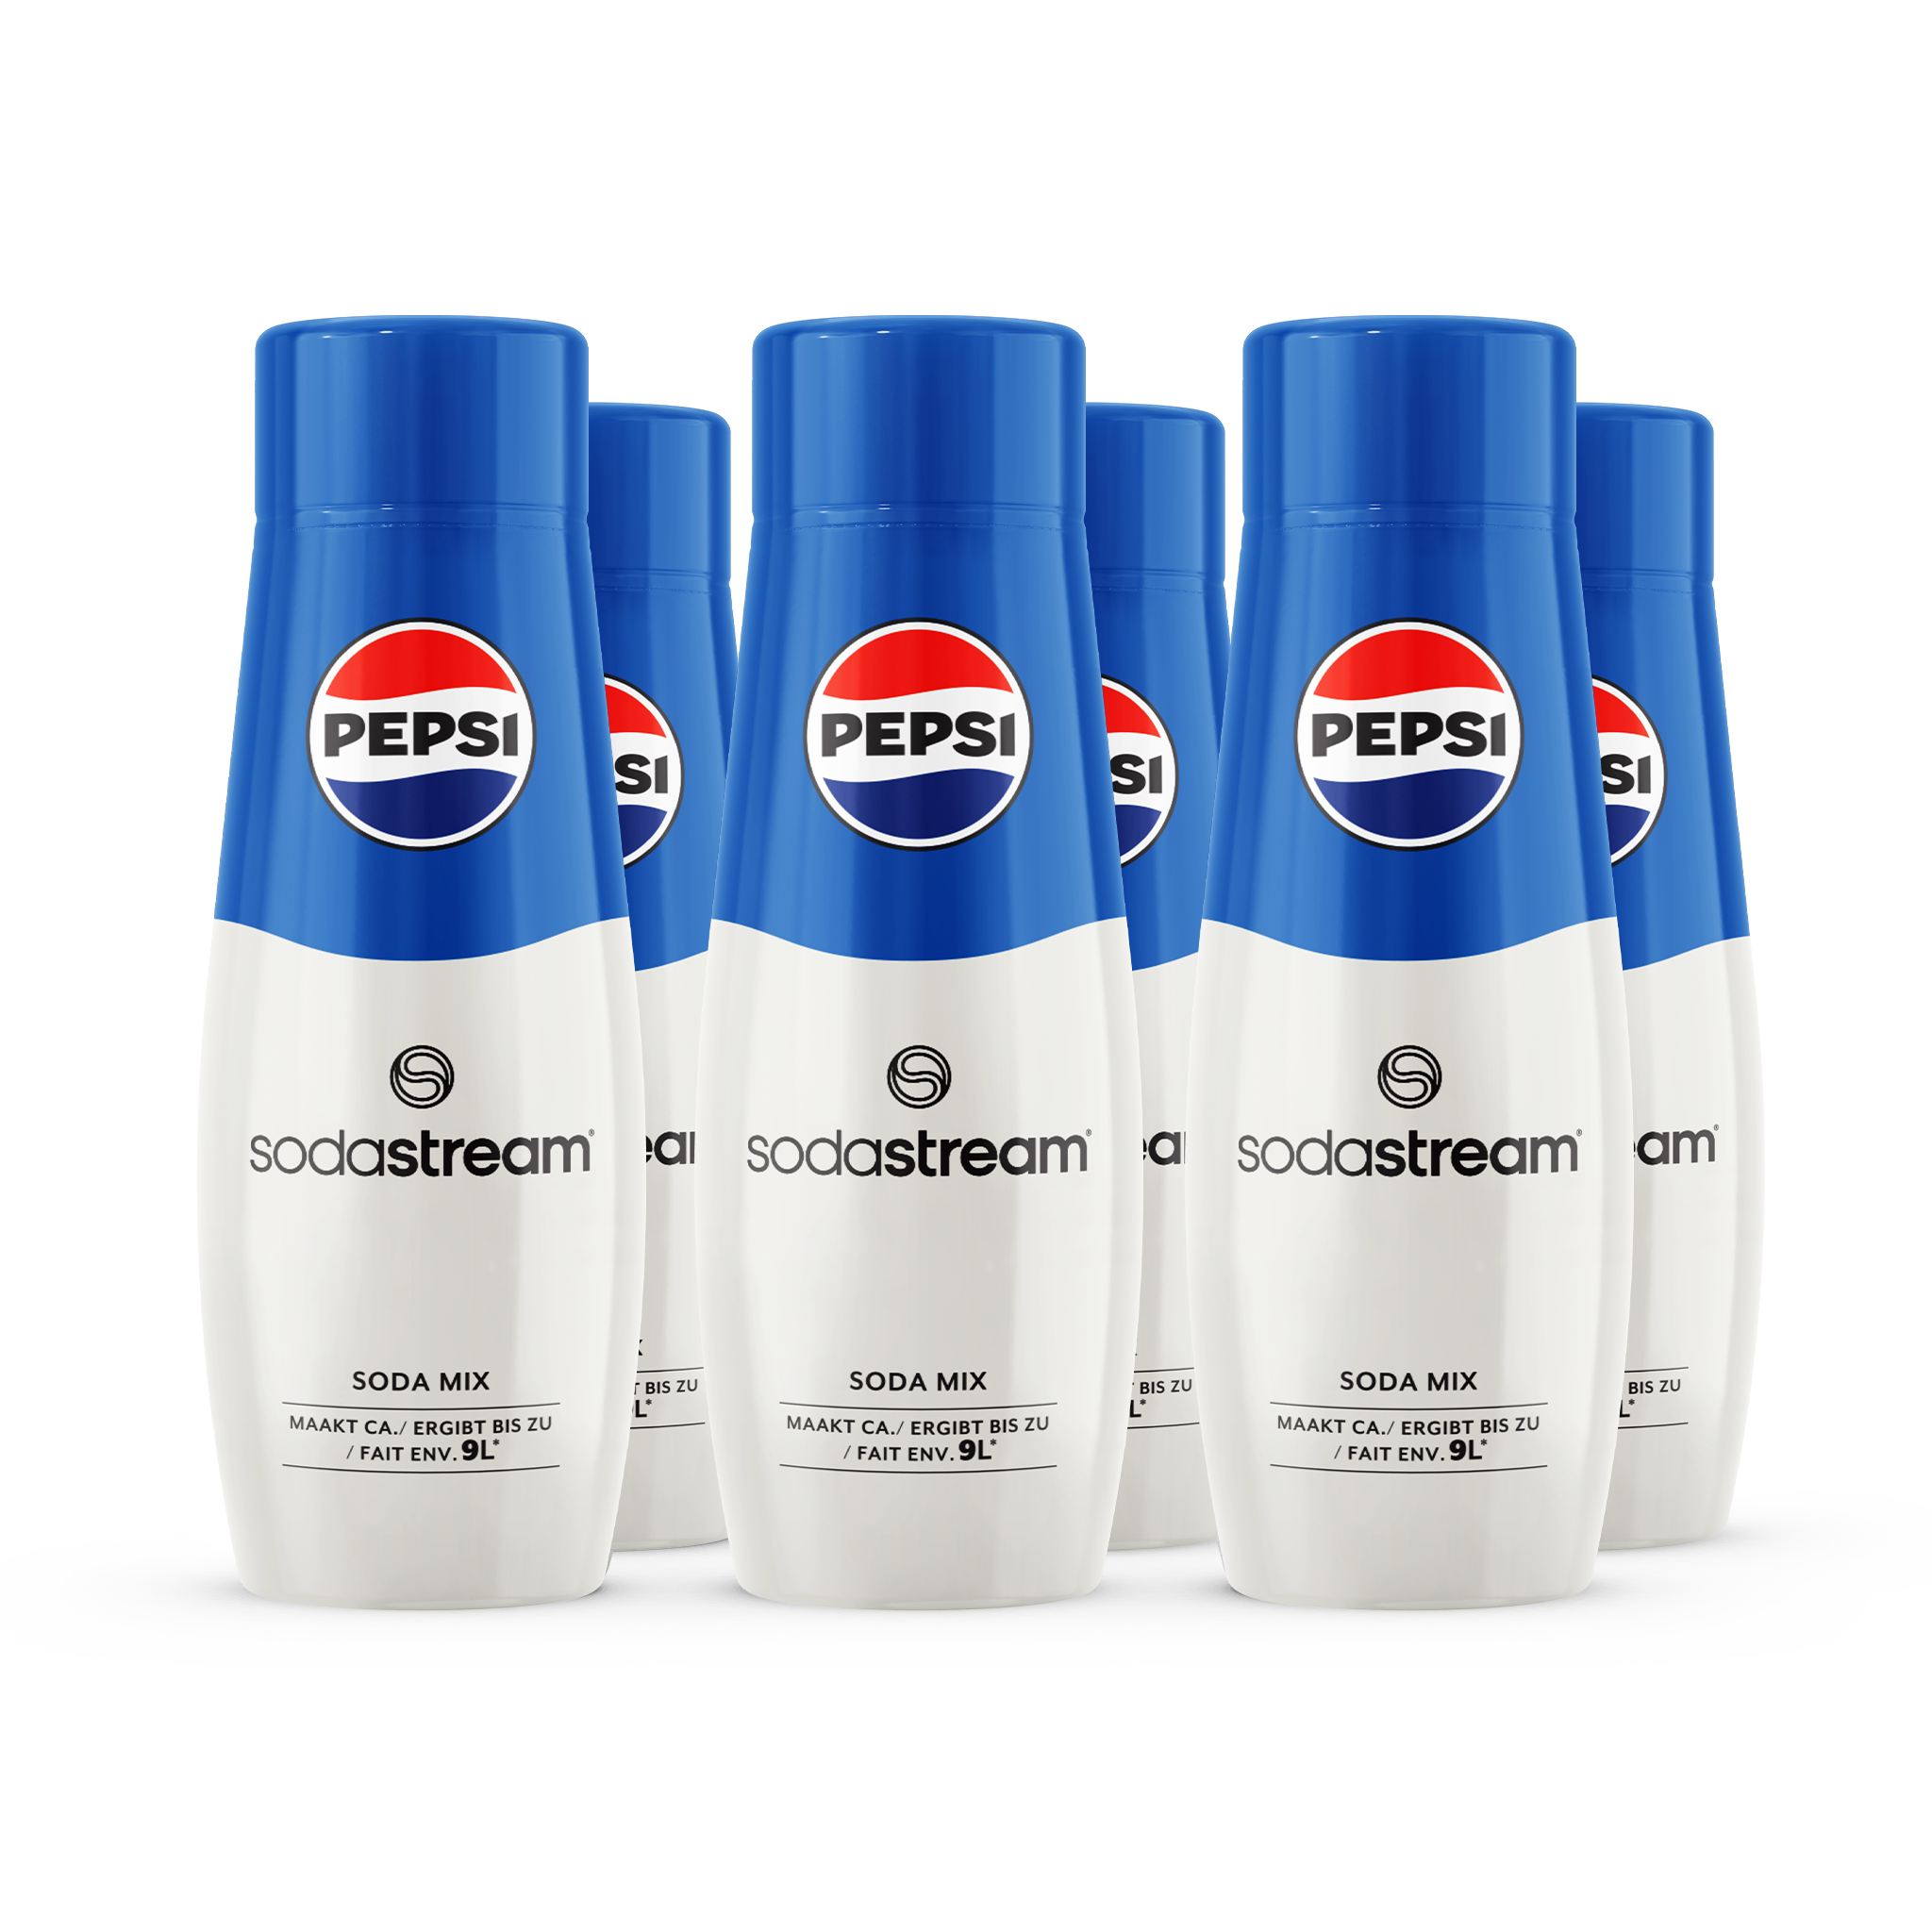 Pepsi 6-pack sodastream